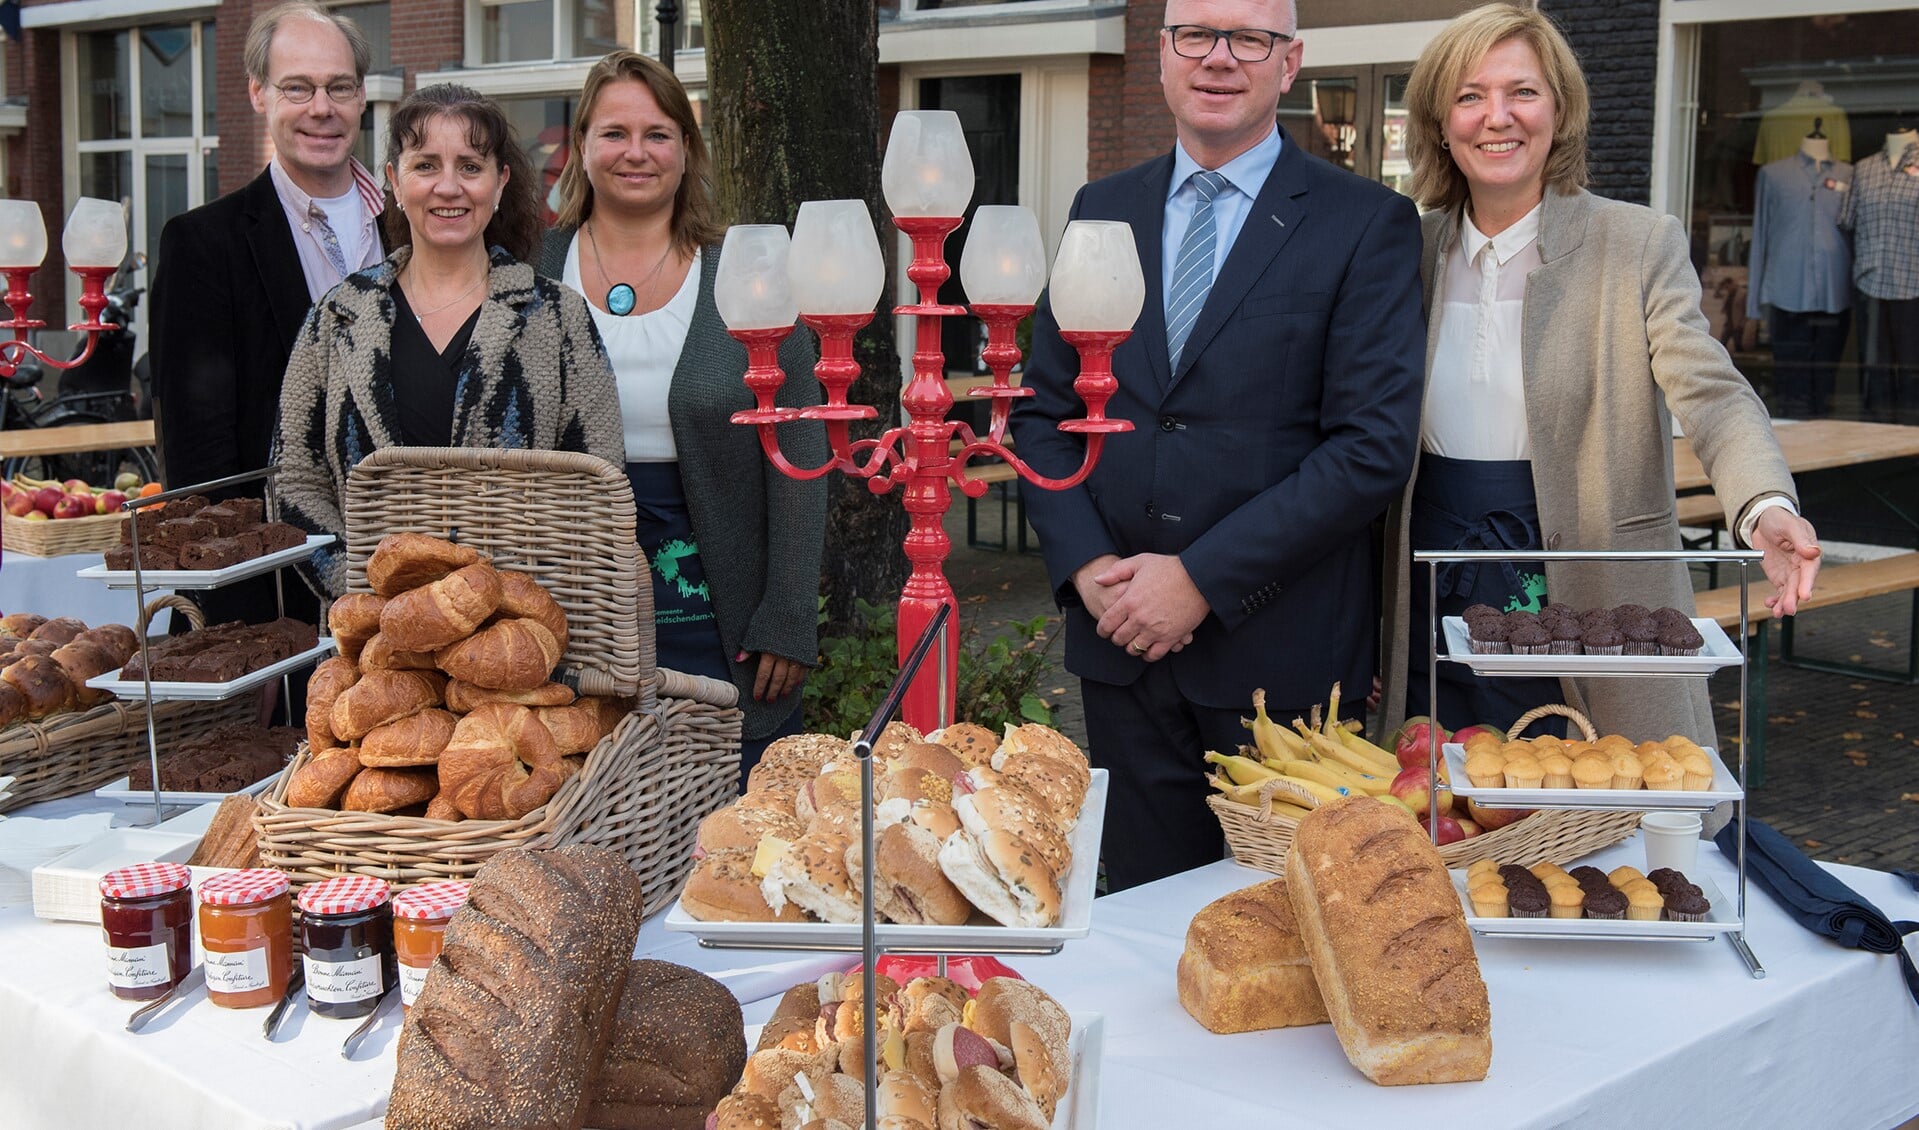 Burgemeester en wethouders serveerden in Voorburg het ontbijt aan de inwoners (foto: Michel Groen).